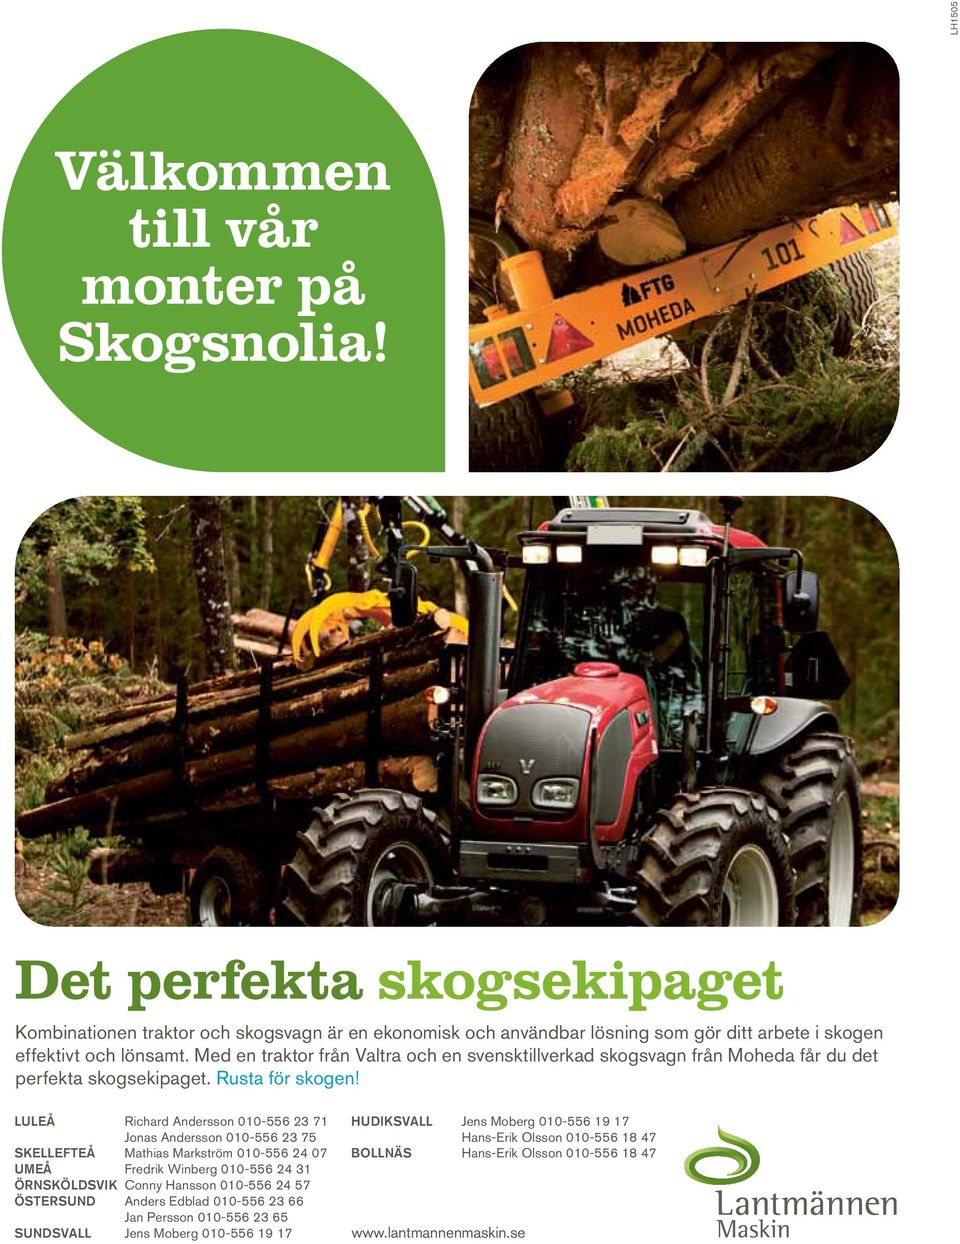 Med en traktor från Valtra och en svensktillverkad skogsvagn från Moheda får du det perfekta skogsekipaget. Rusta för skogen!